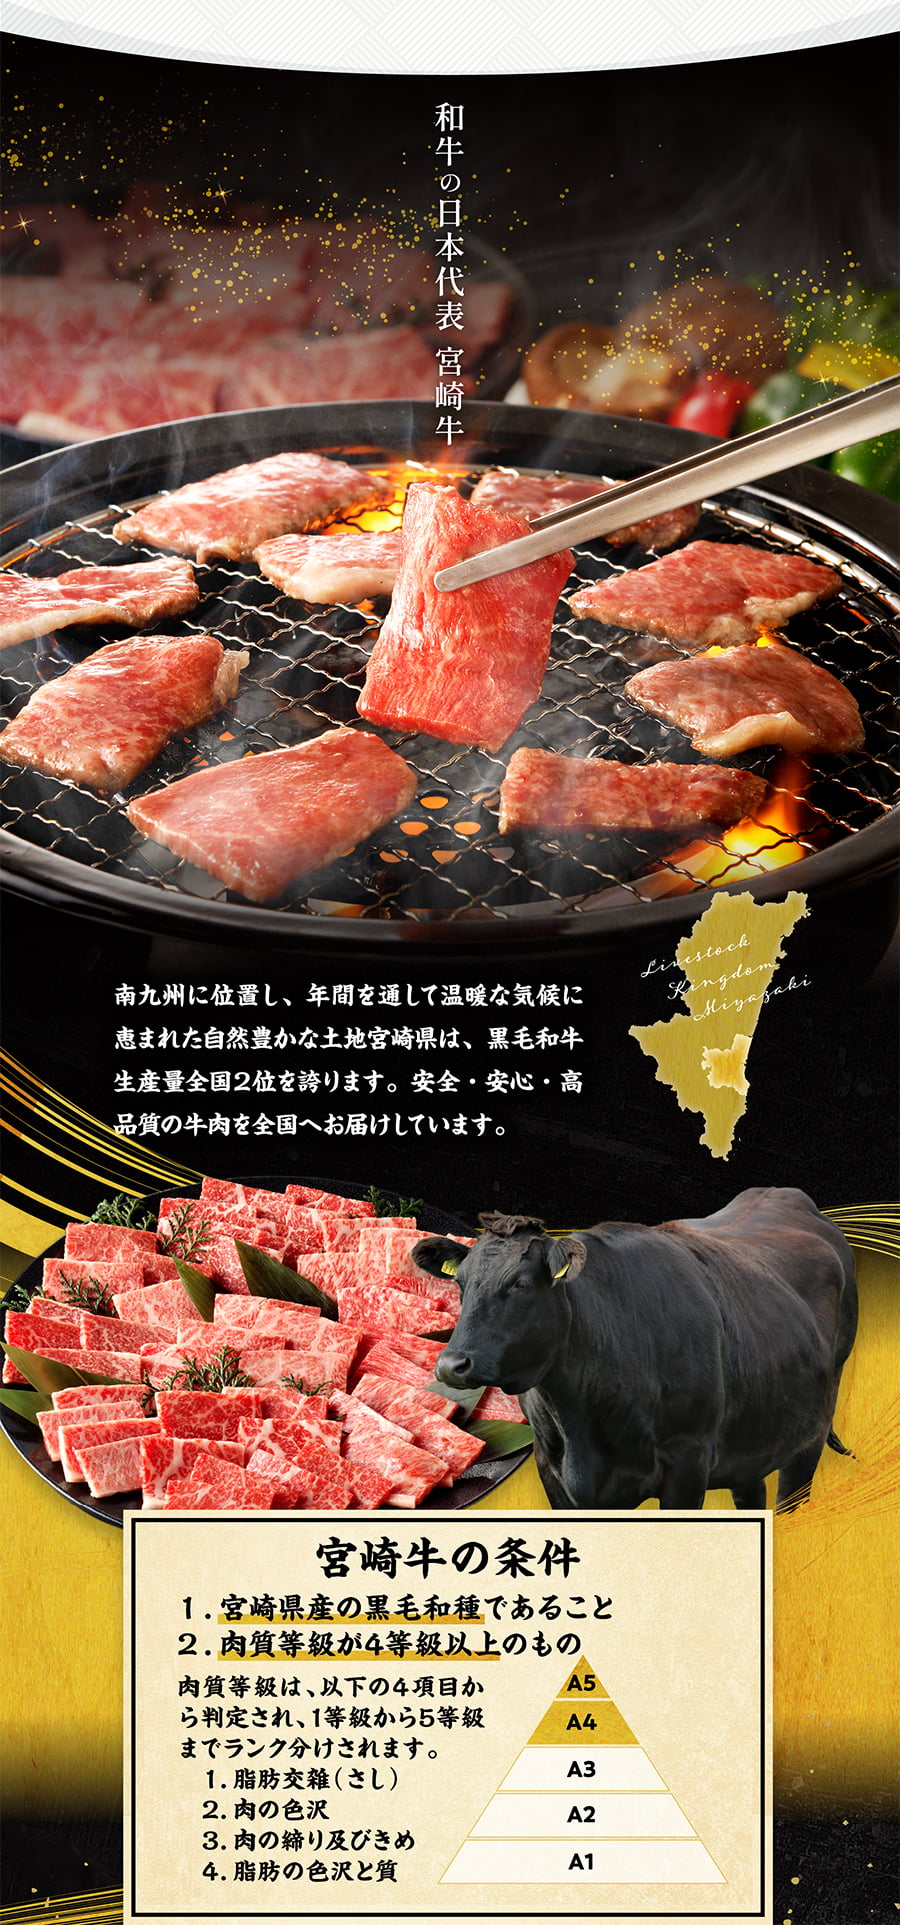 和牛の日本代表 宮崎牛 南九州に位置し、年間を通して温暖な気候に恵まれた自然豊かな土地宮崎県は、黒毛和牛生産量全国２位を誇ります。安全・安心・高品質の牛肉を全国へお届けしています。